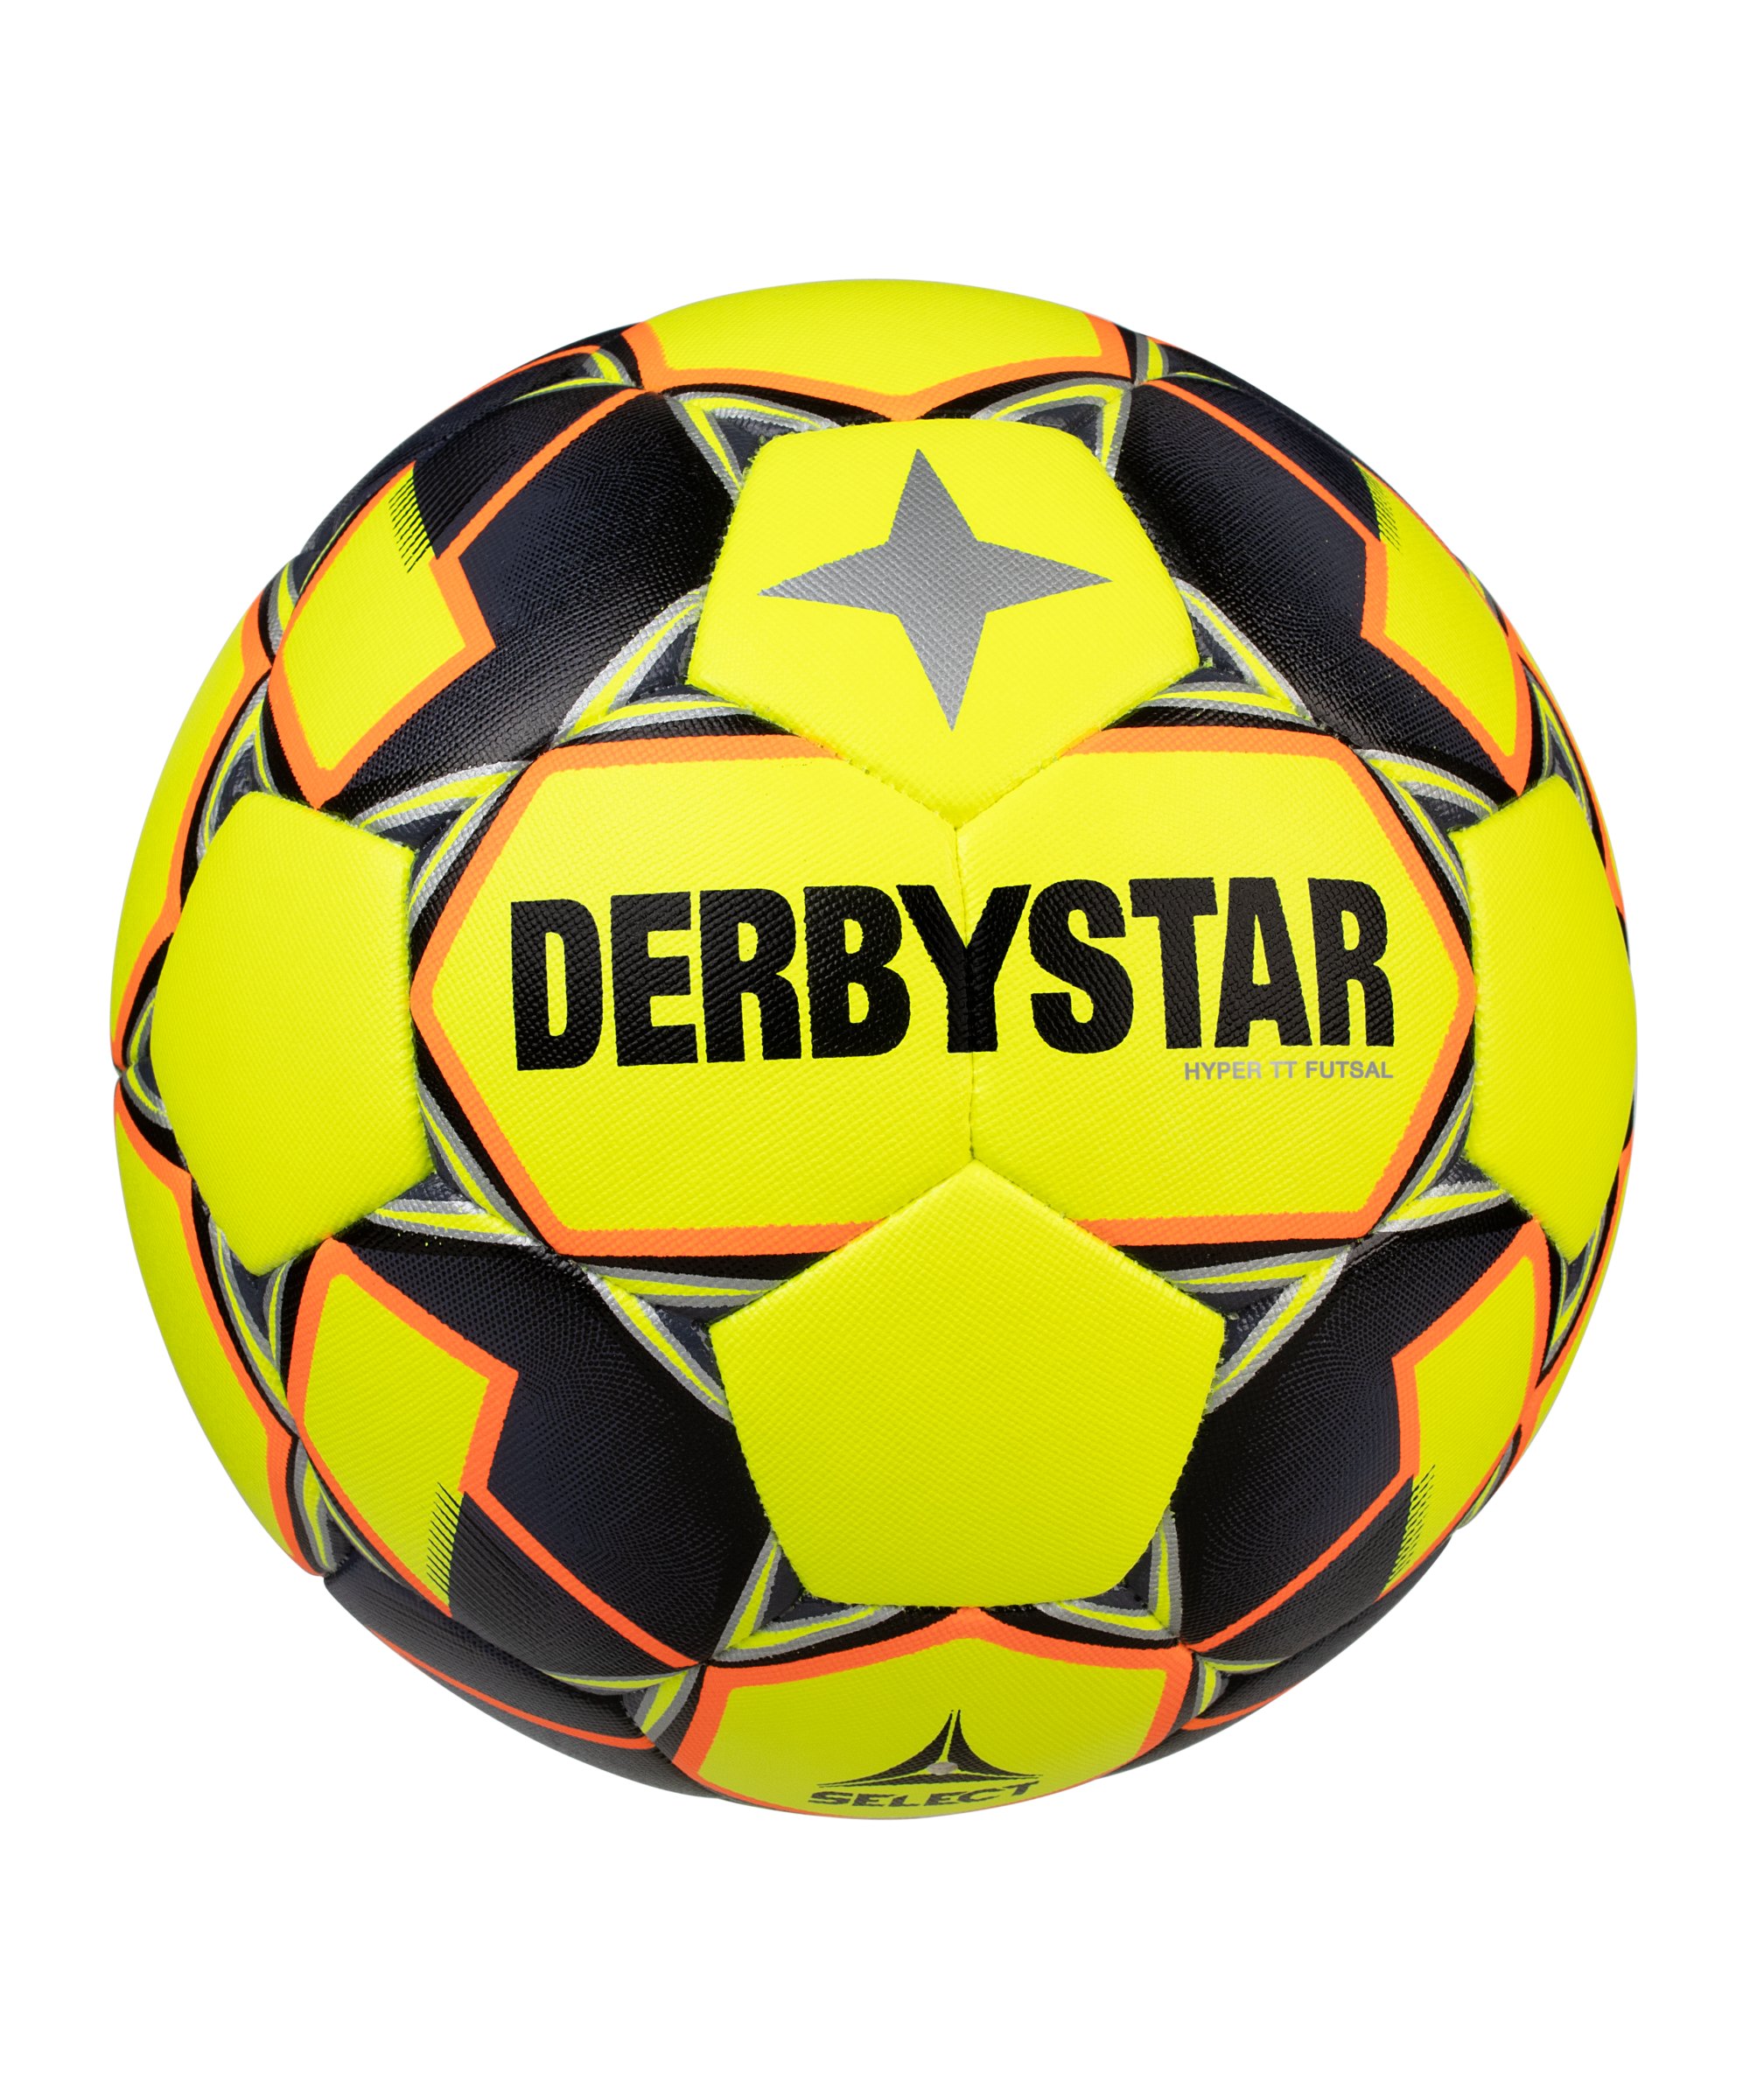 Derbystar Futsal Hyper TT V20 Trainingsball F587 - gelb